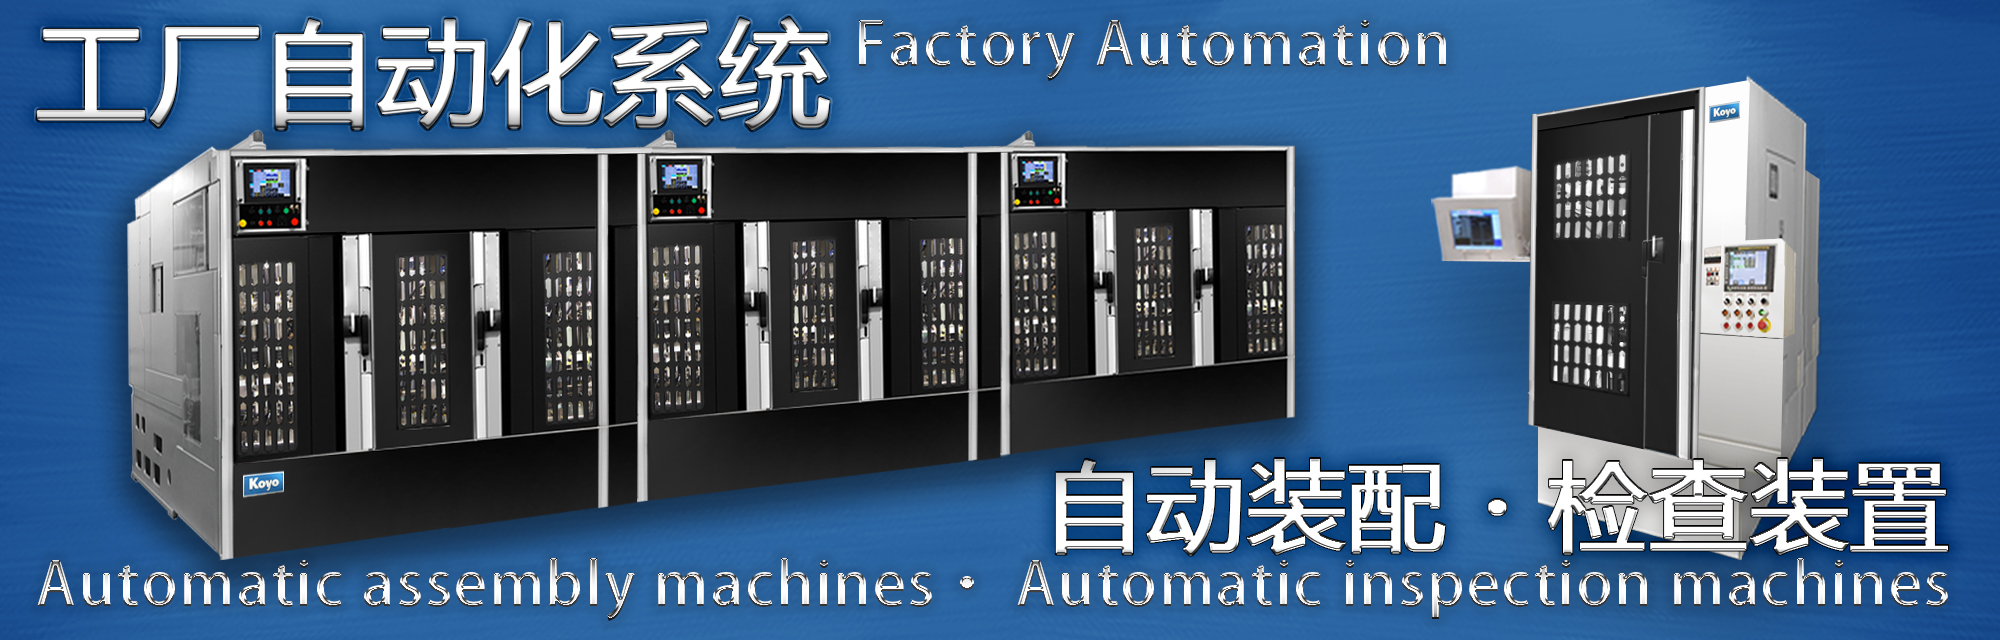 工厂自动化系统